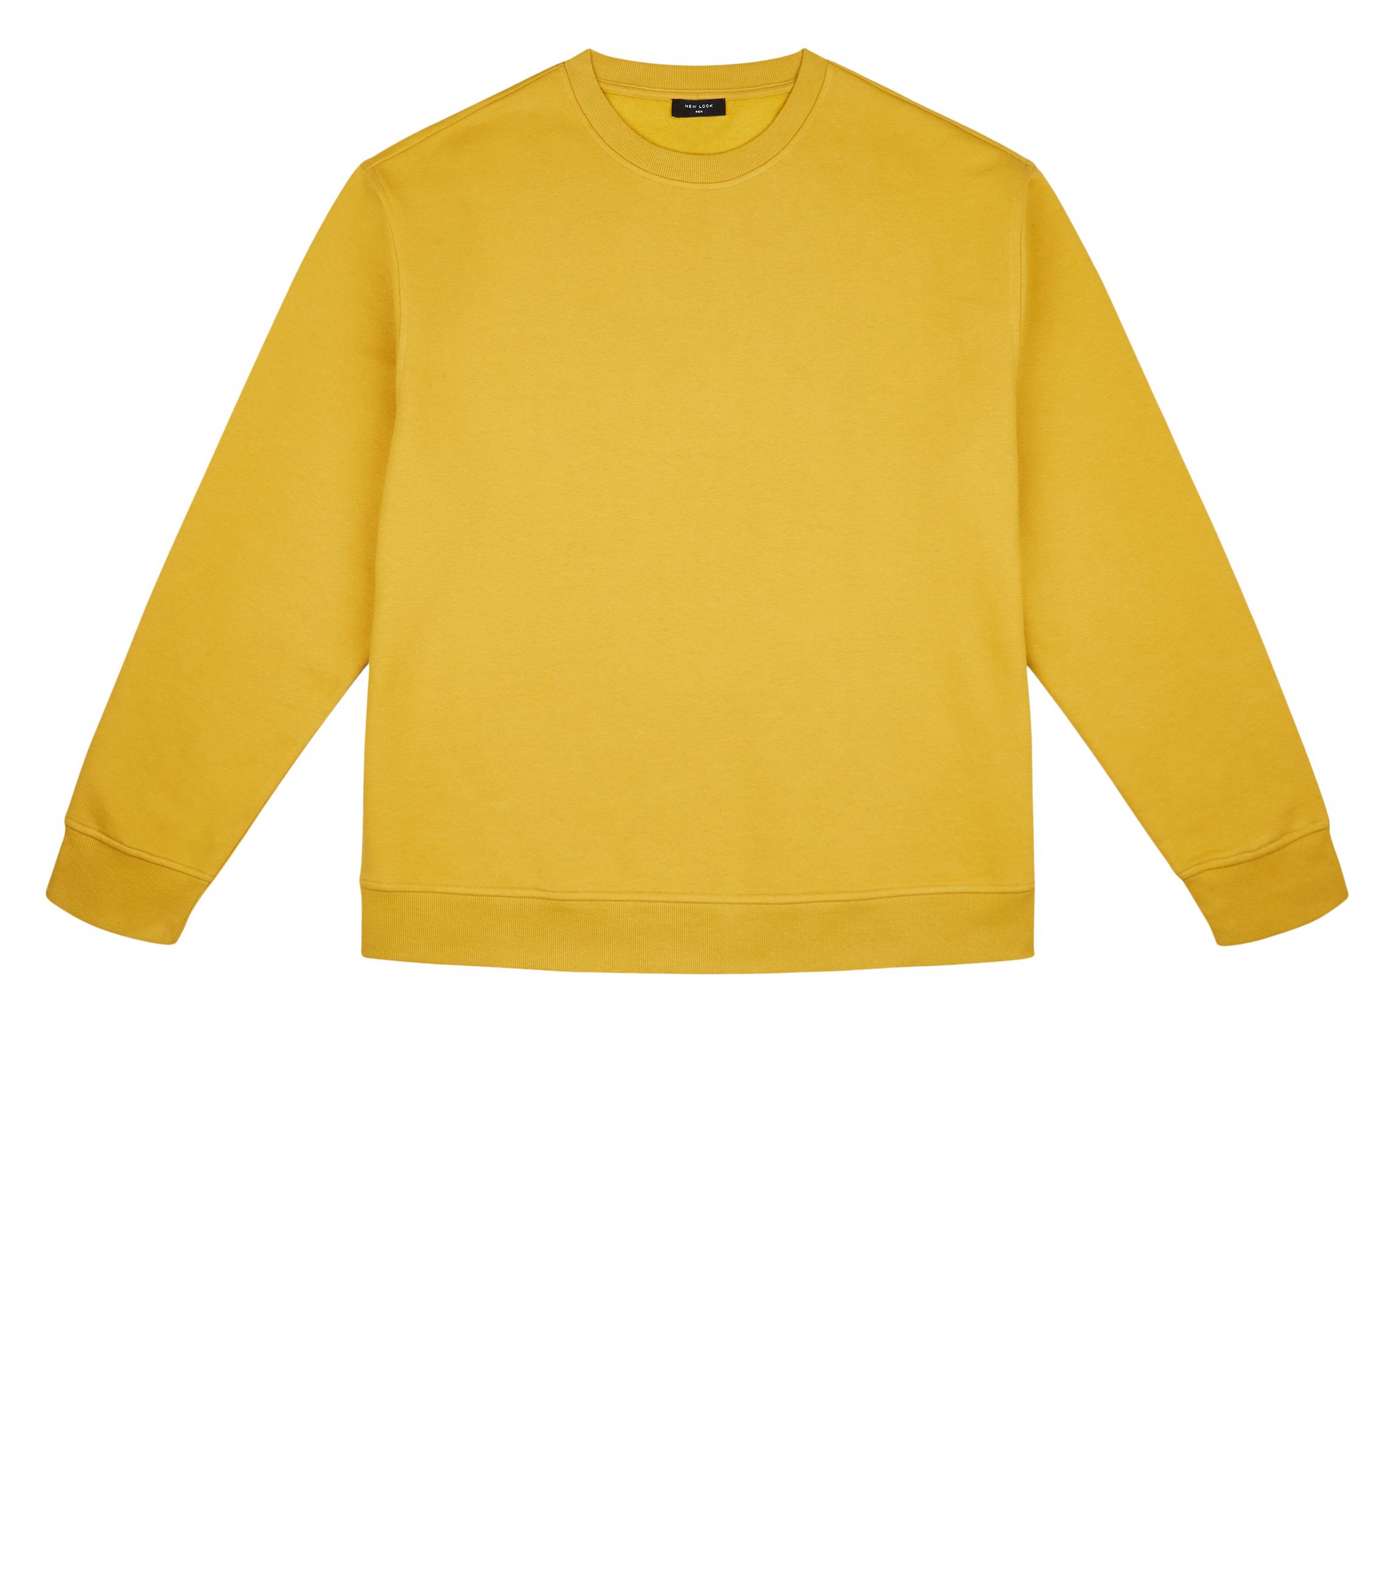 Plus Size Yellow Long Sleeve Crew Sweatshirt Image 4